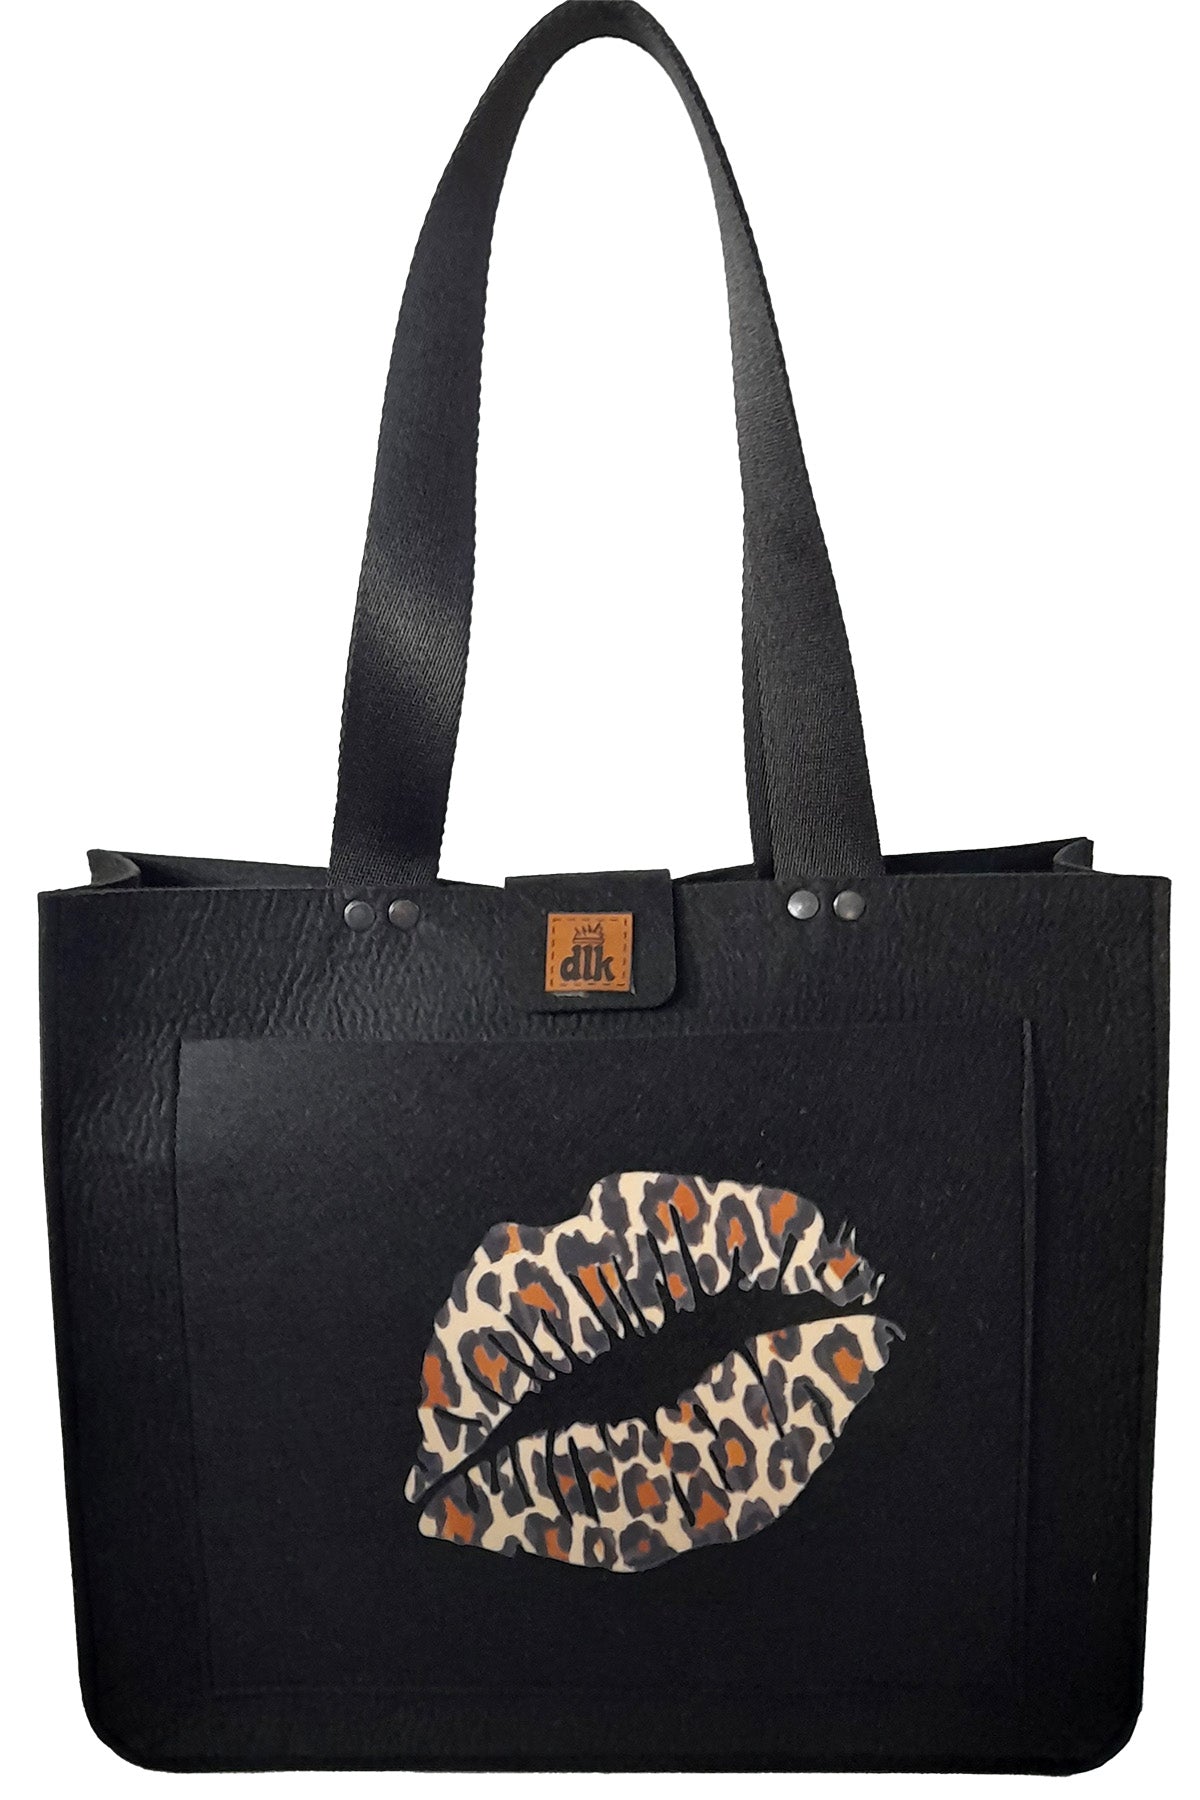 Large Size Shoulder Bag - Printed Felt Bag - Colored Lip - 40x33x10cm